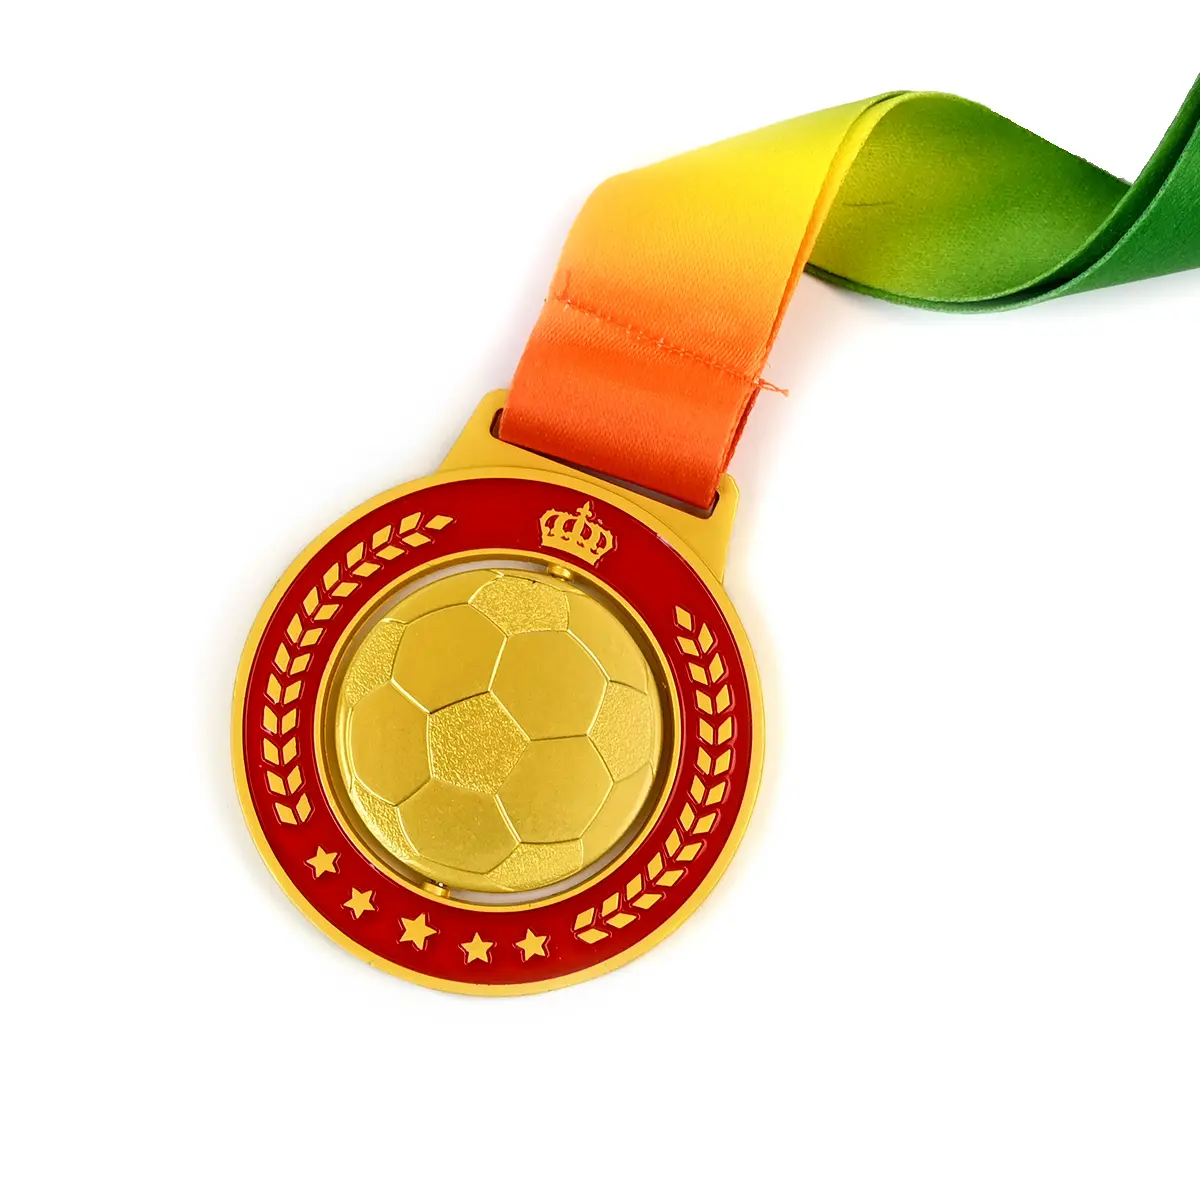 Bóng chày rồng huy chương trường kỷ niệm khiêu vũ cờ vua thủ công mỹ nghệ kim loại mạ thể thao LƯU NIỆM DANH hiệu với Túi OPP giải thưởng